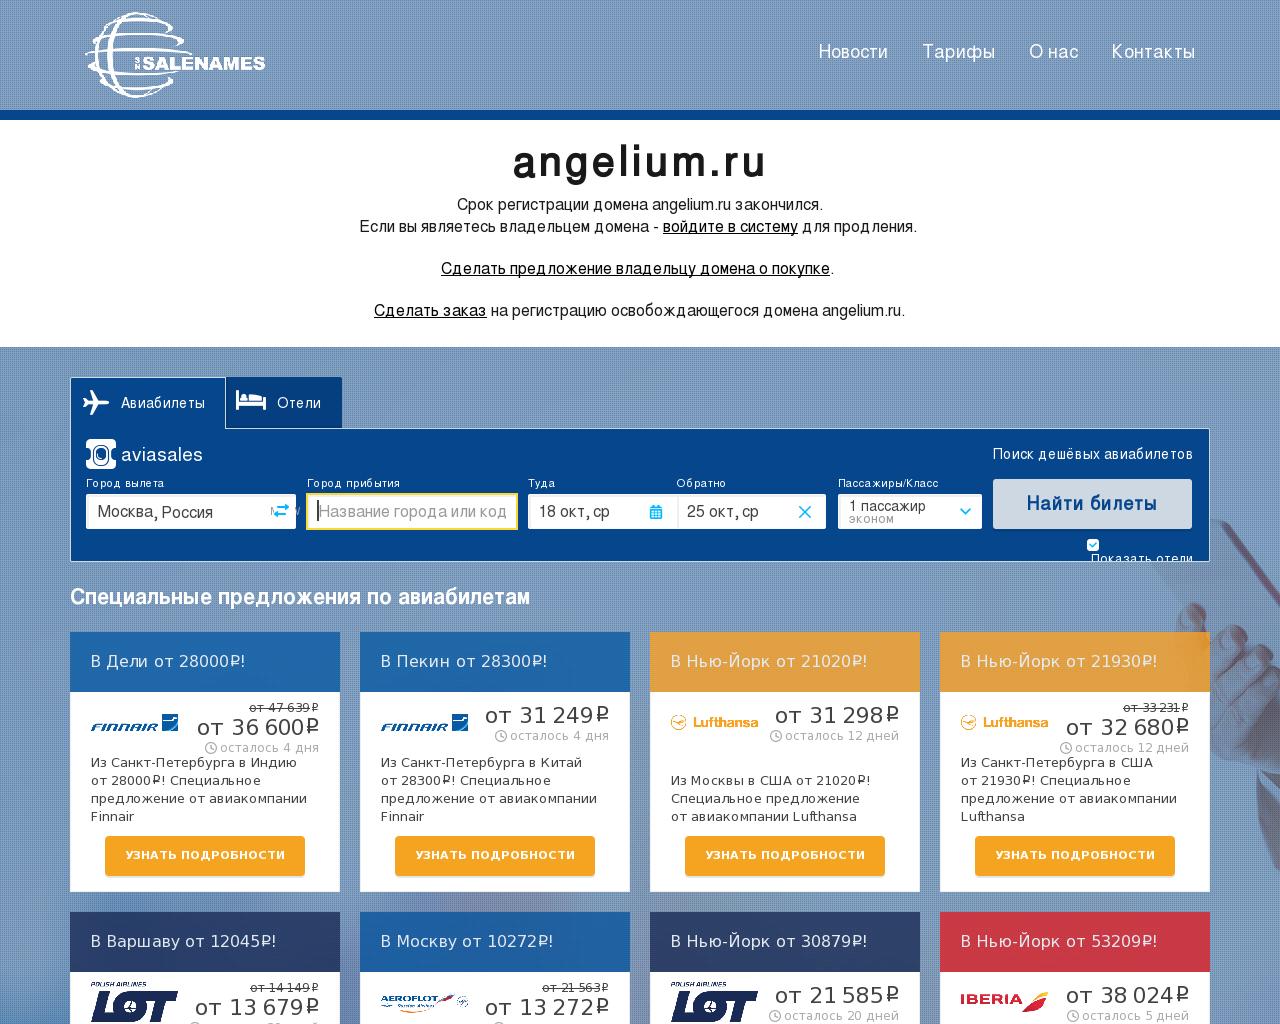 Изображение сайта angelium.ru в разрешении 1280x1024